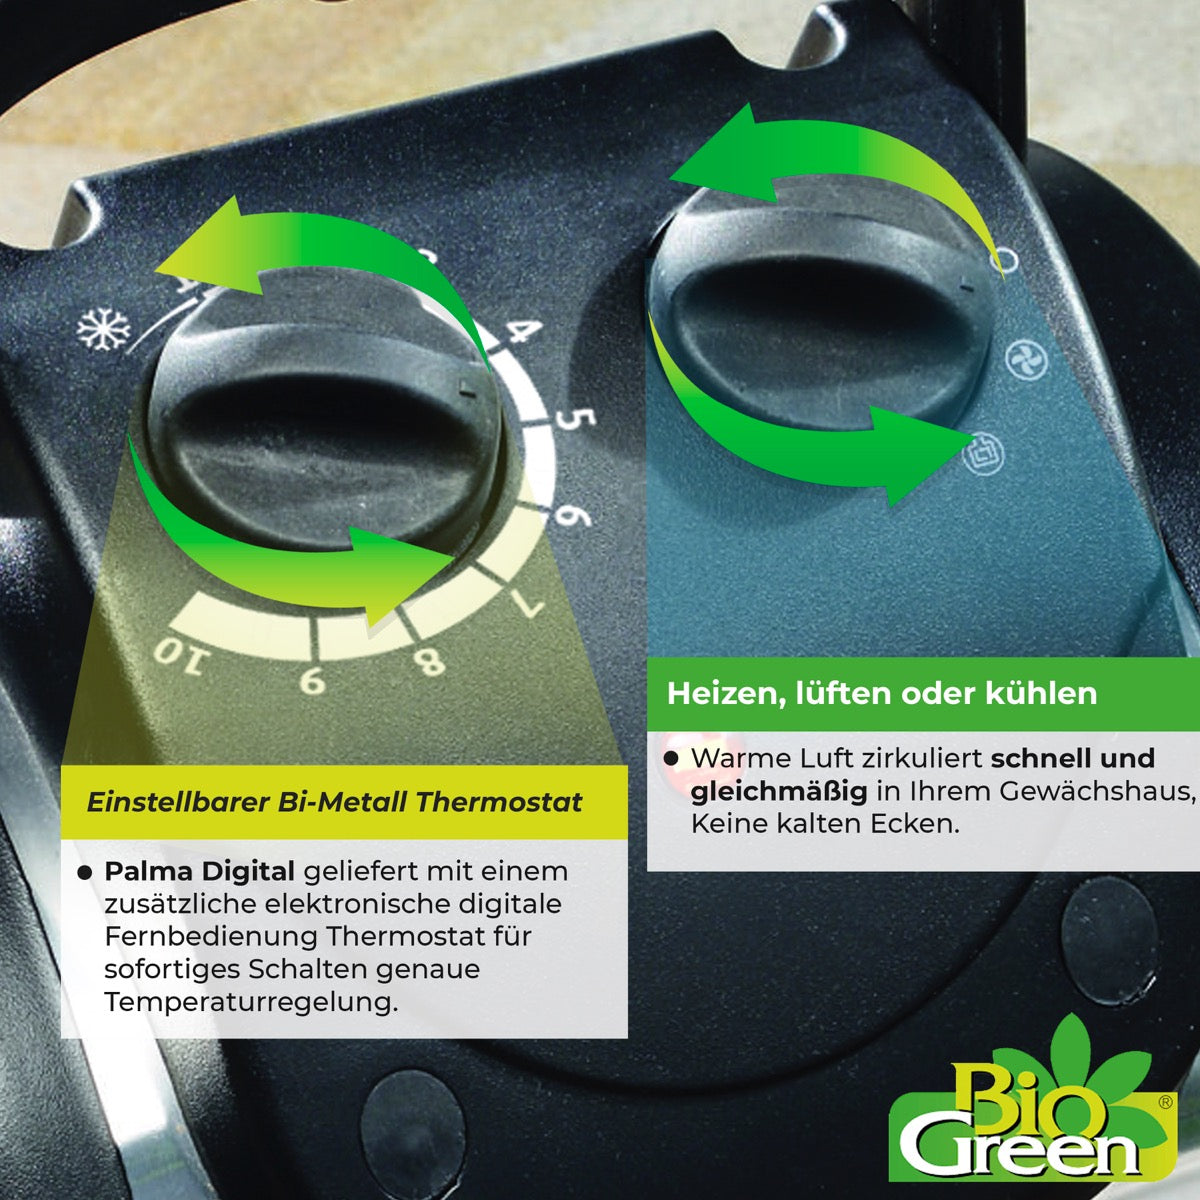 Bio Green Heizlüfter Palma mit manuellem Thermostat und Drehschaltern für Einstellungen